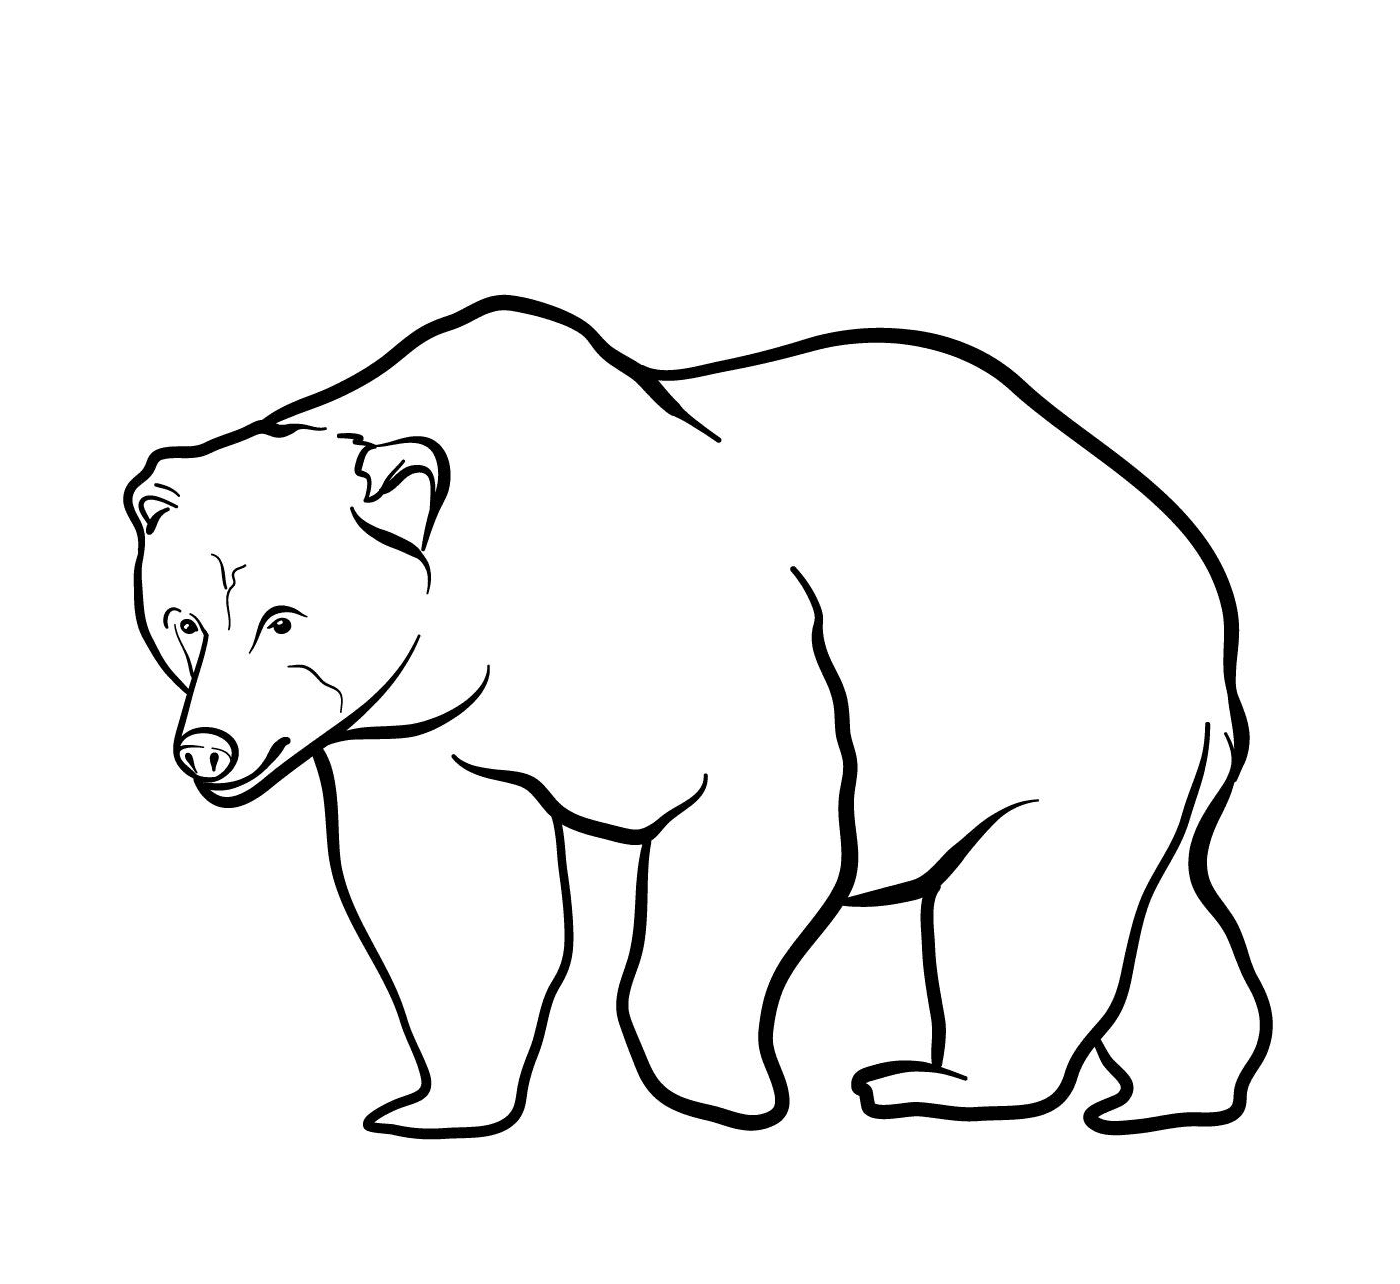  A brown bear 